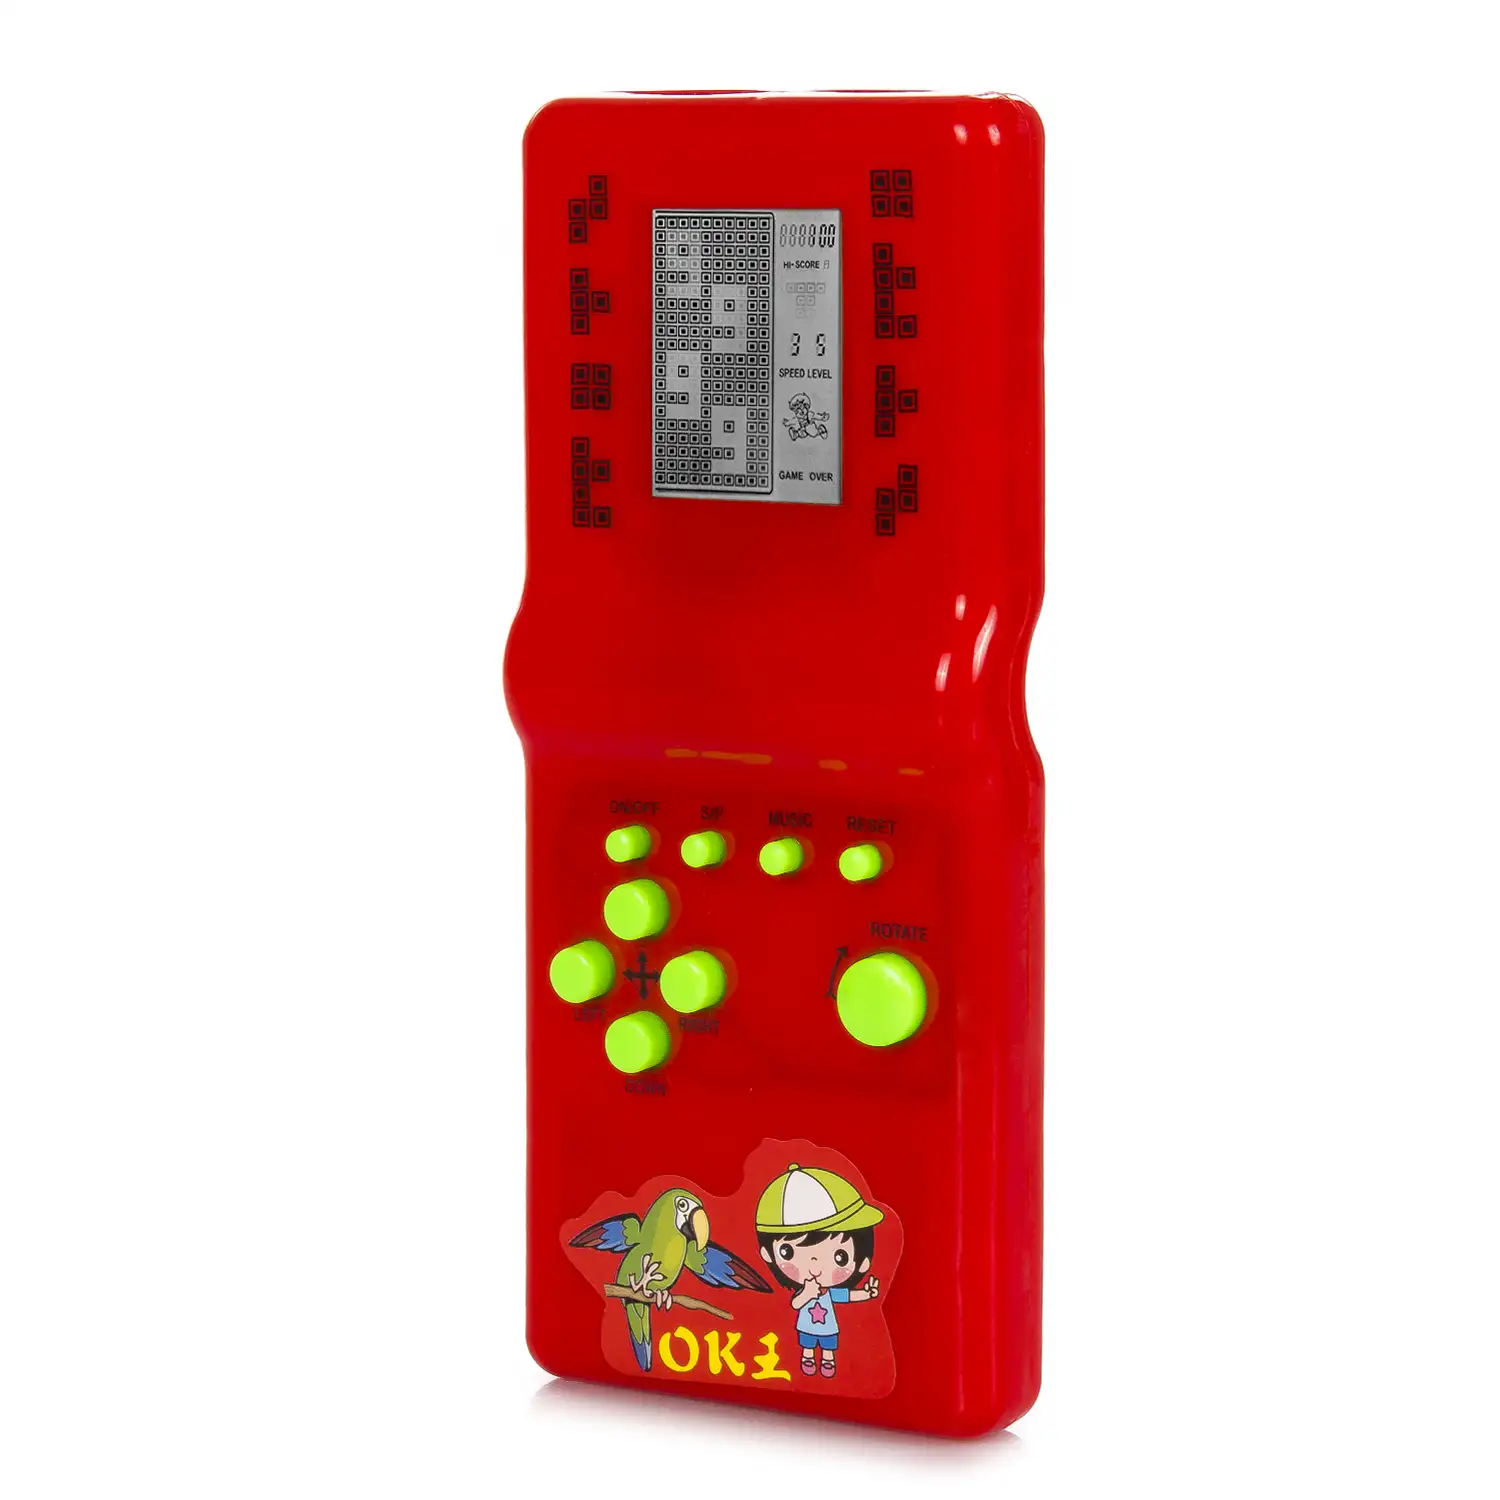 Consola portátil con 26 juegos clásicos Brick Game. Tetris, rompecabezas, dificultad y velocidad ajustable.